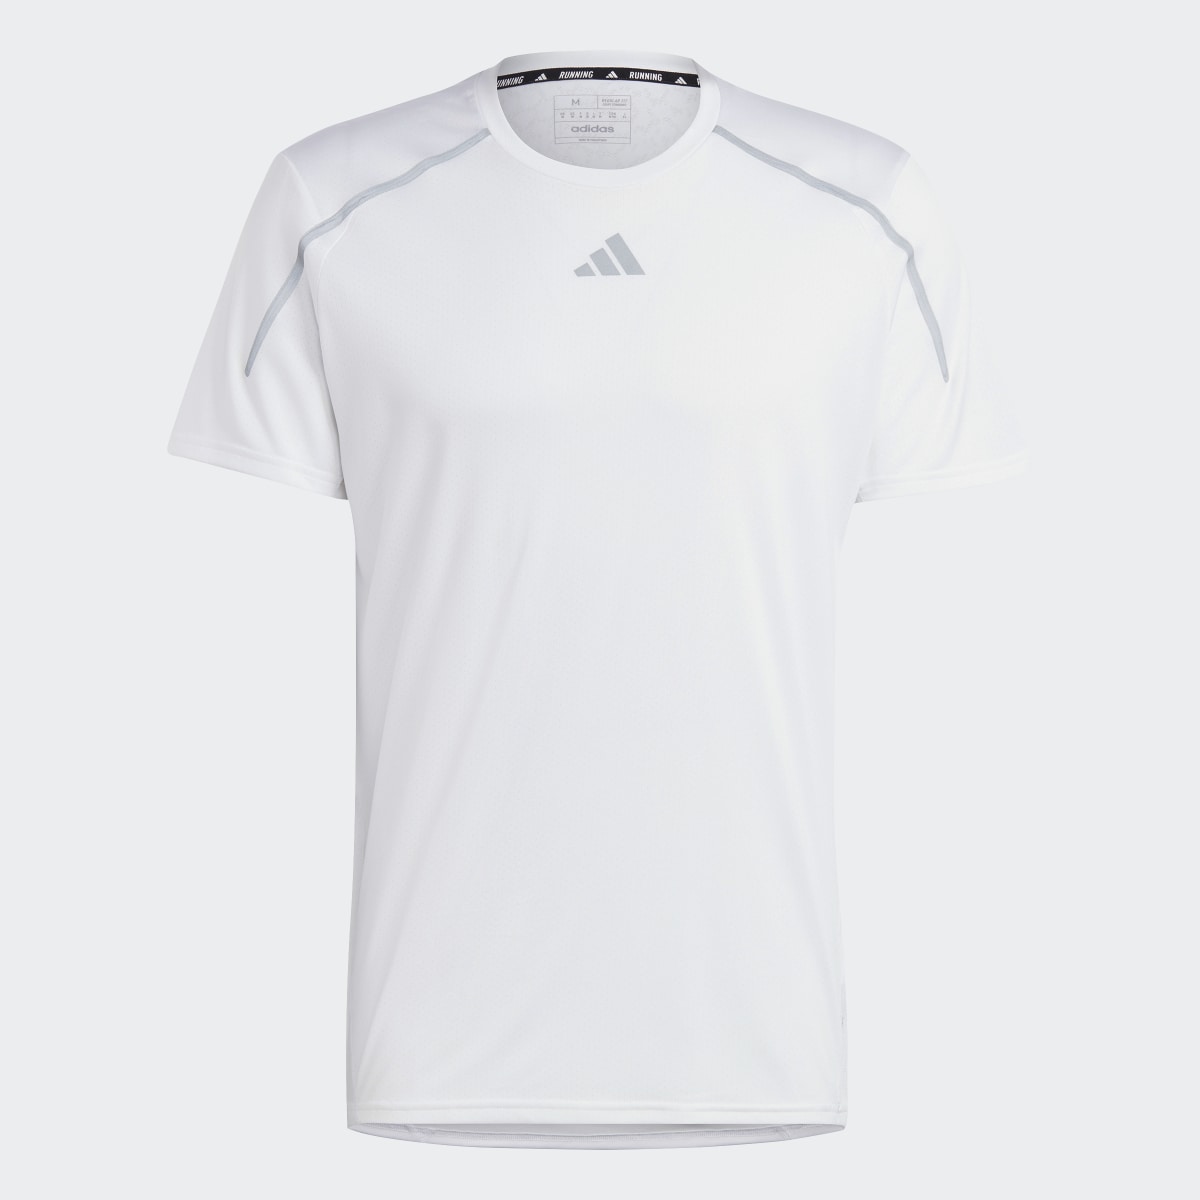 Adidas Confident Engineered T-Shirt. 5